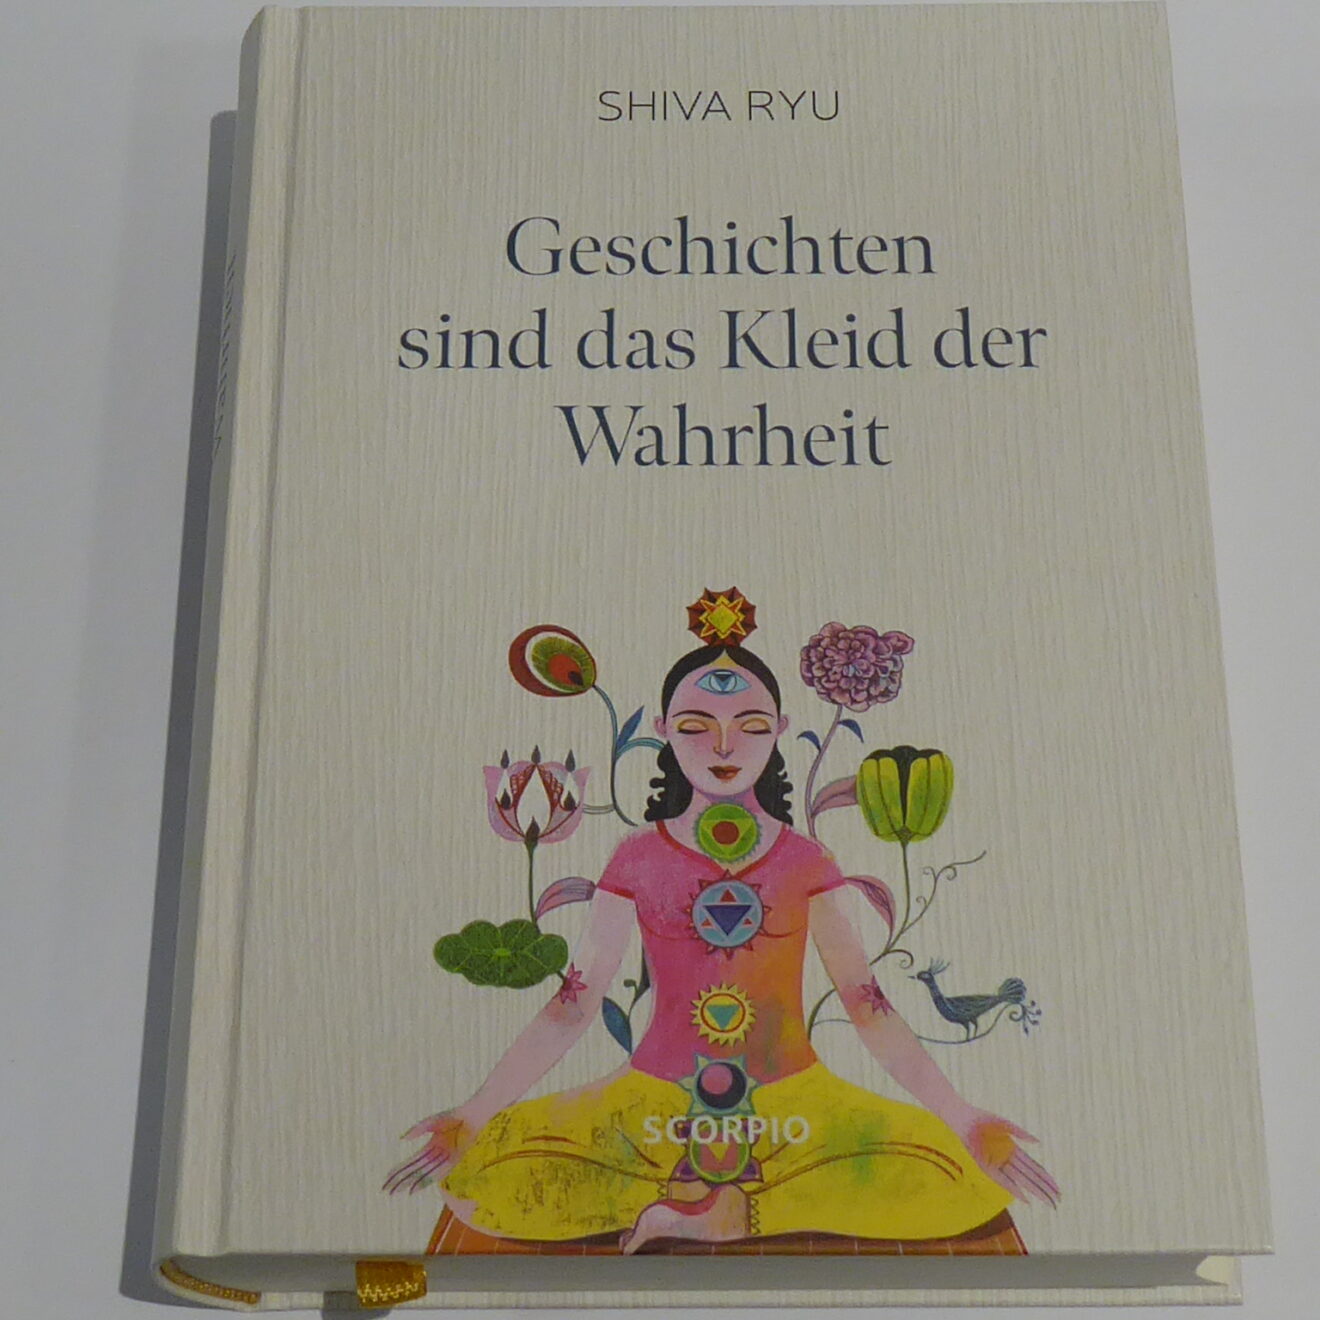 Shiva Ryu: Geschichten sind das Kleid der Wahrheit